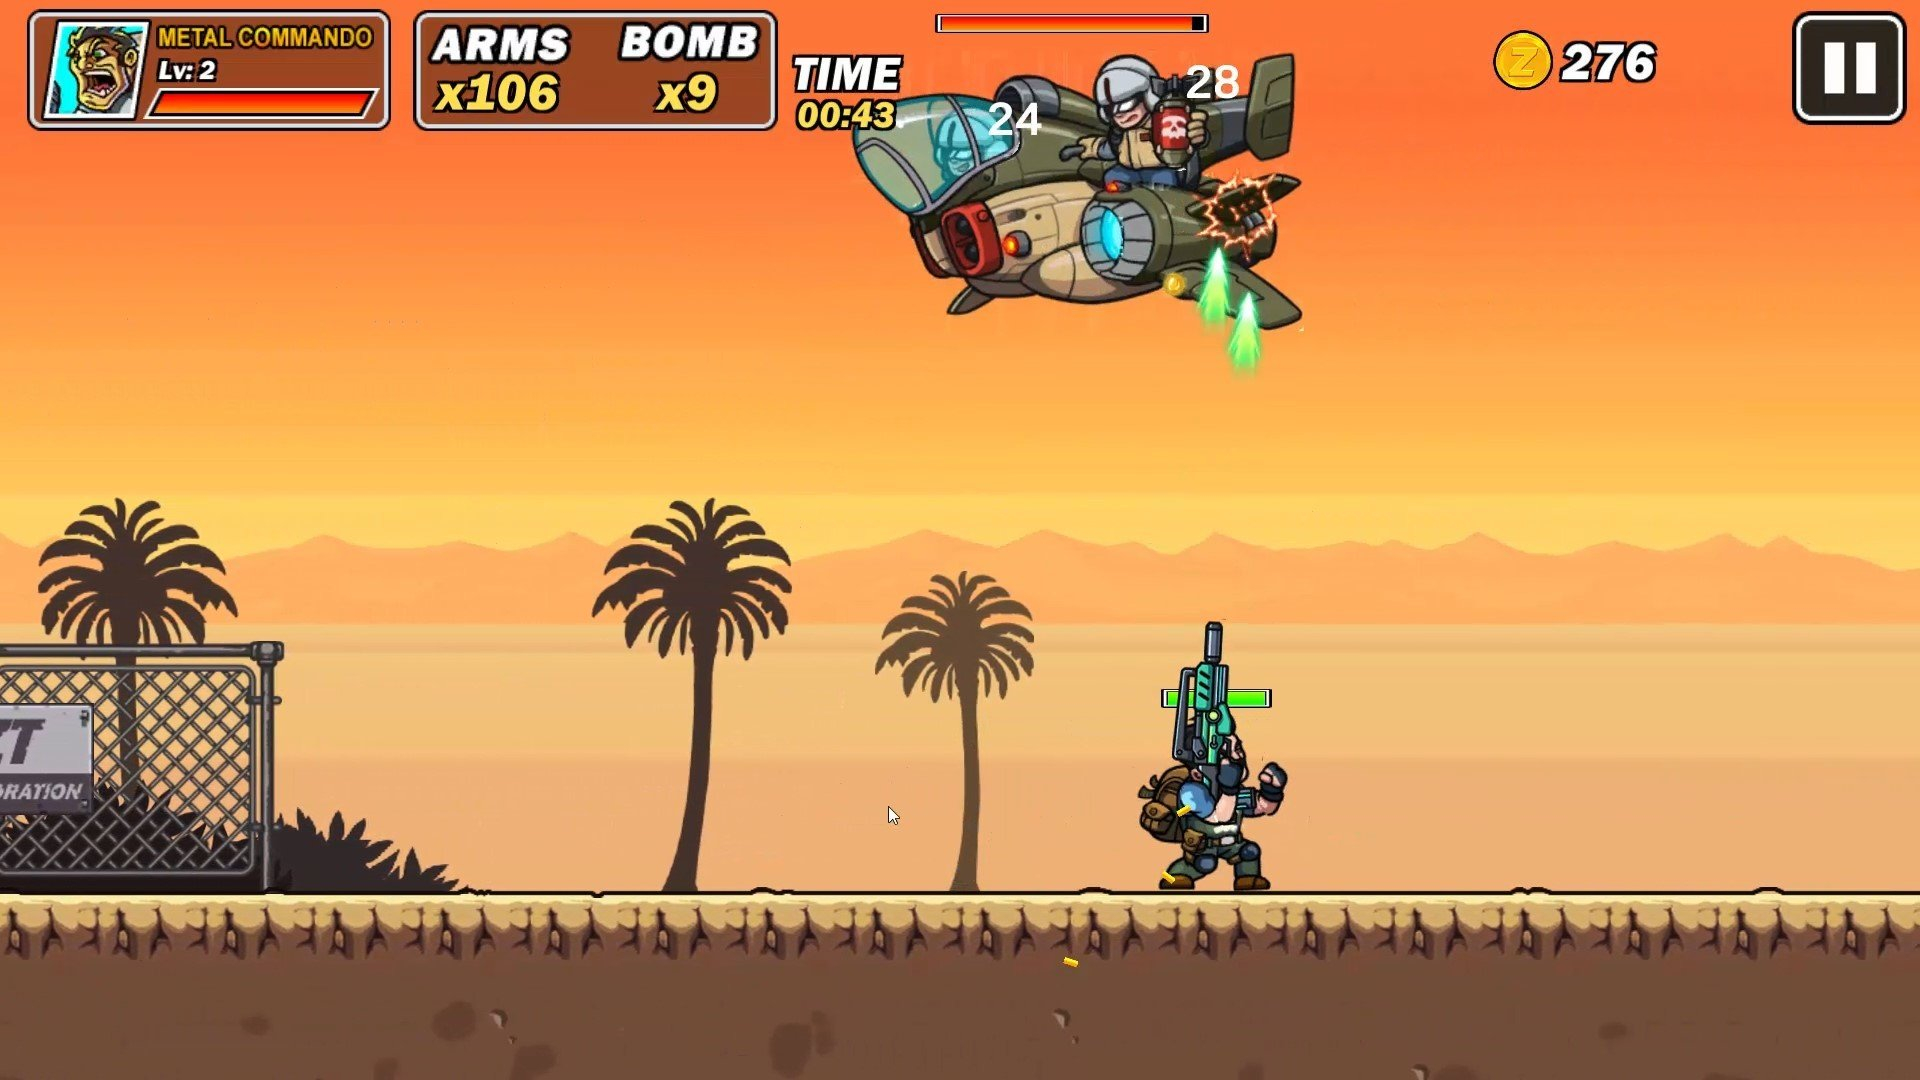 Скриншот из игры Metal Commando под номером 4